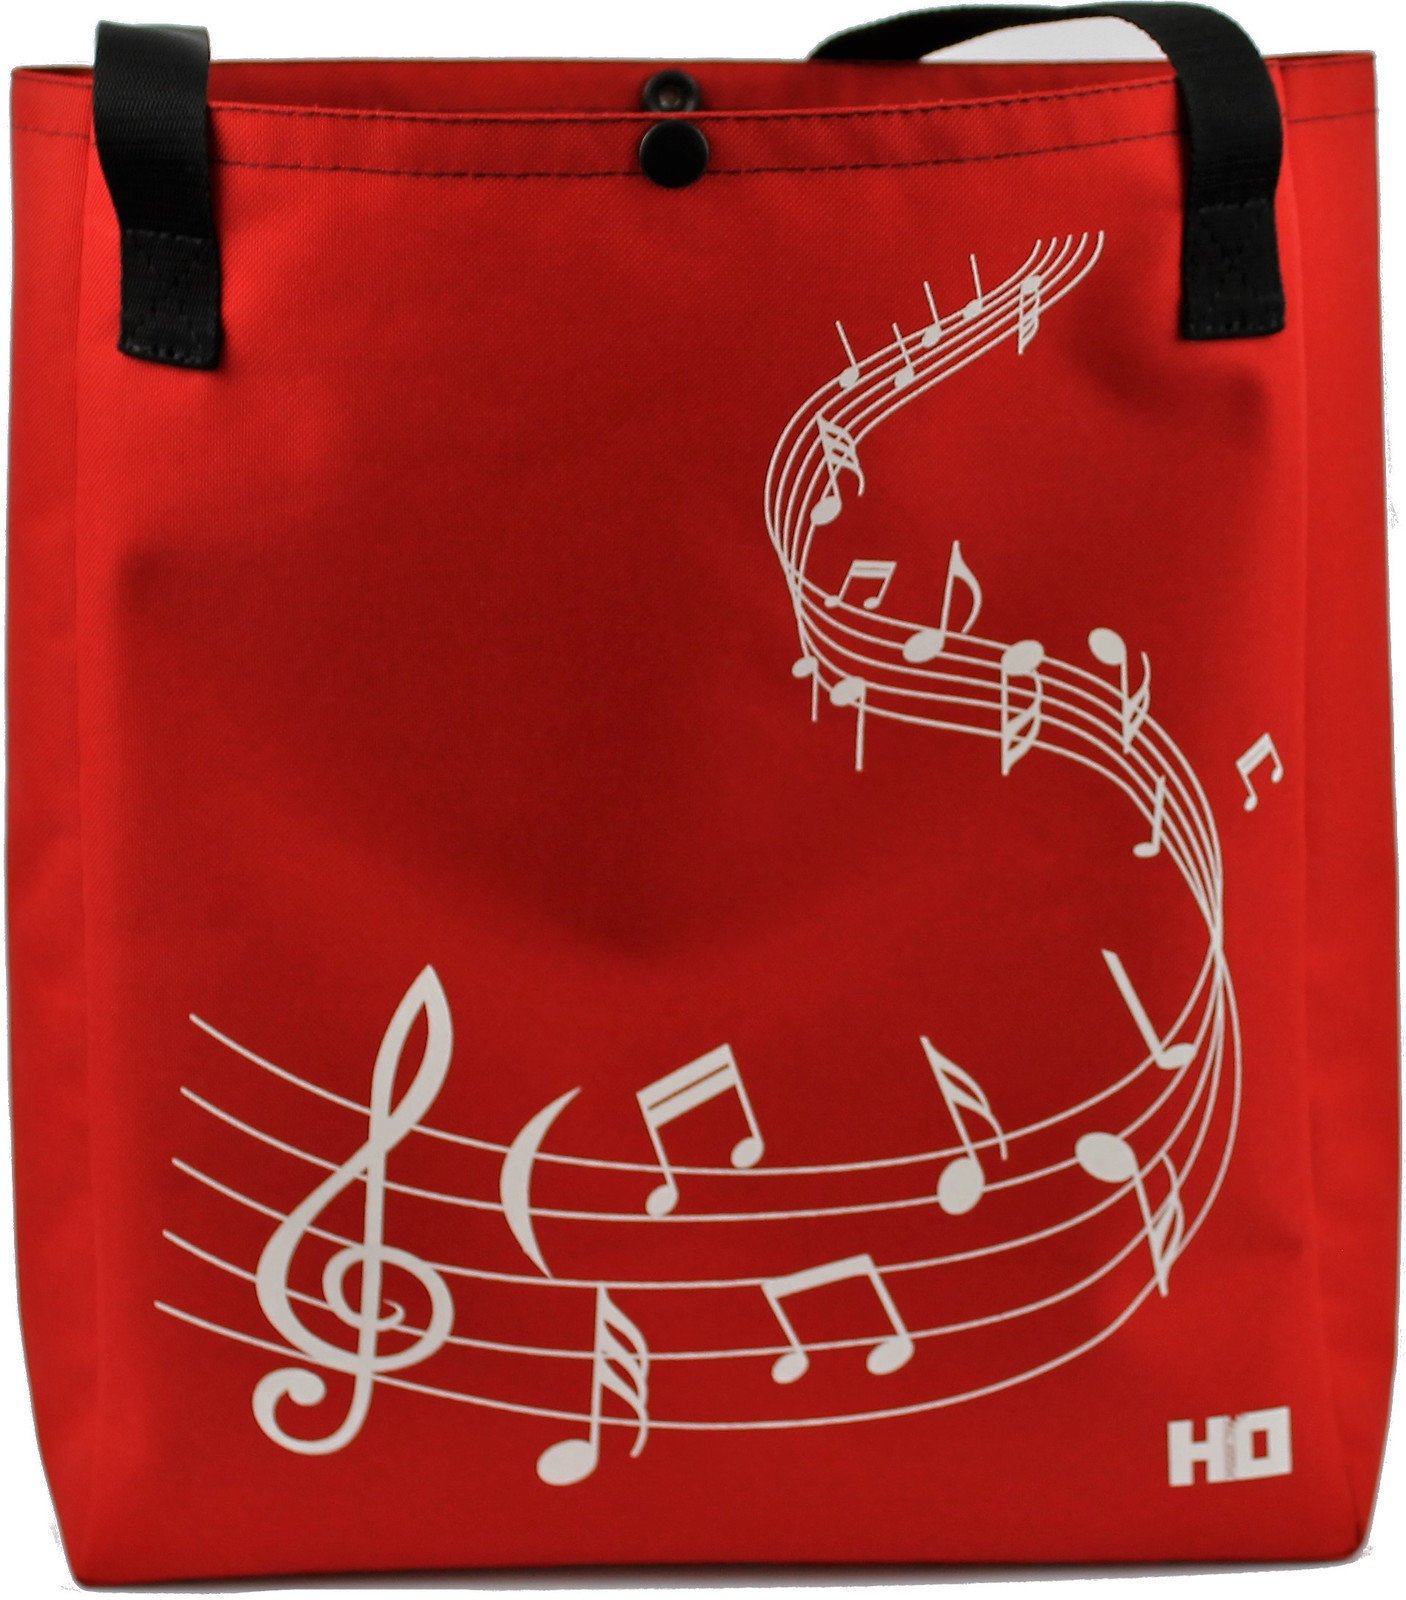 Nákupná taška Hudební Obaly H-O Melody Red-Red